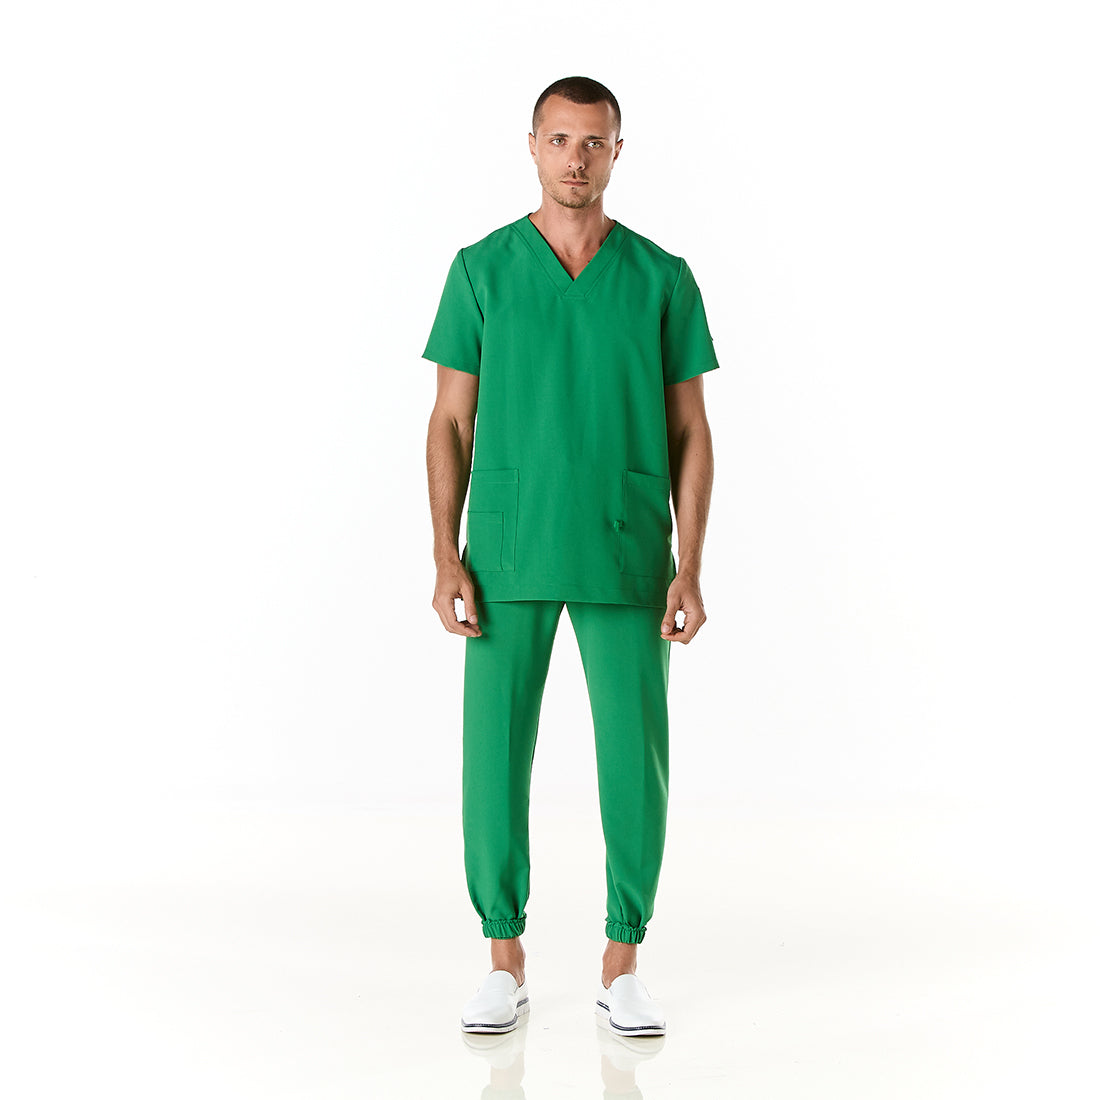 Hombre vistiendo pijama sanitario color verde perico con cuello en v y pantalon tipo jogger